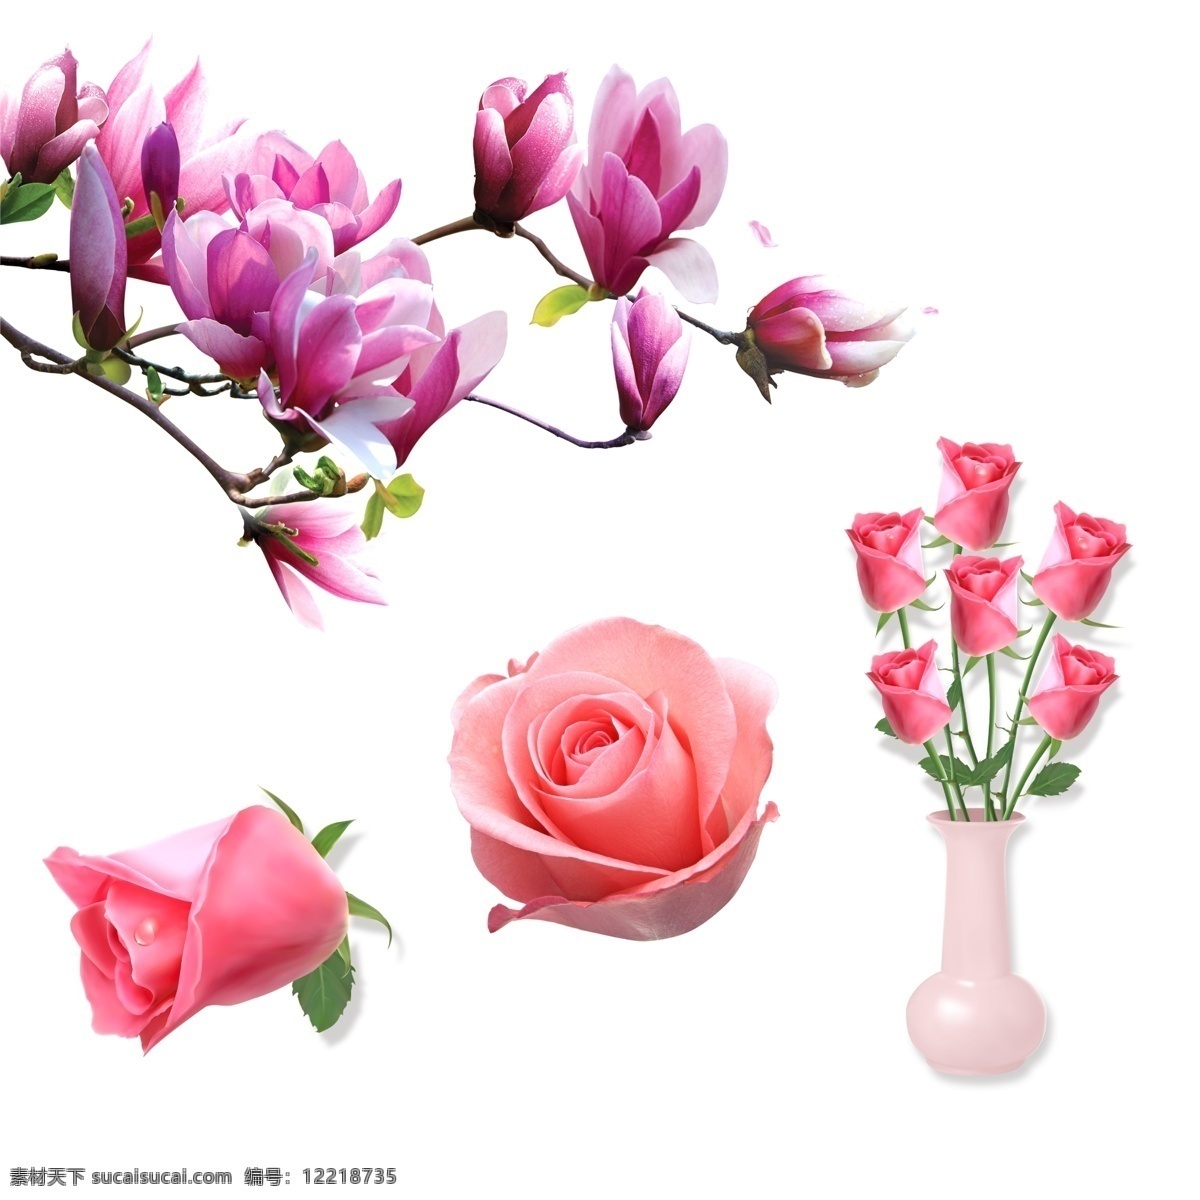 玫瑰花 玉兰花 玉兰树 盛开的花朵 鲜花花朵 花朵花瓶 粉色玫瑰花 花瓶 摆件 鲜花 花朵 唯美花朵 春季花朵 春天素材 春季素材